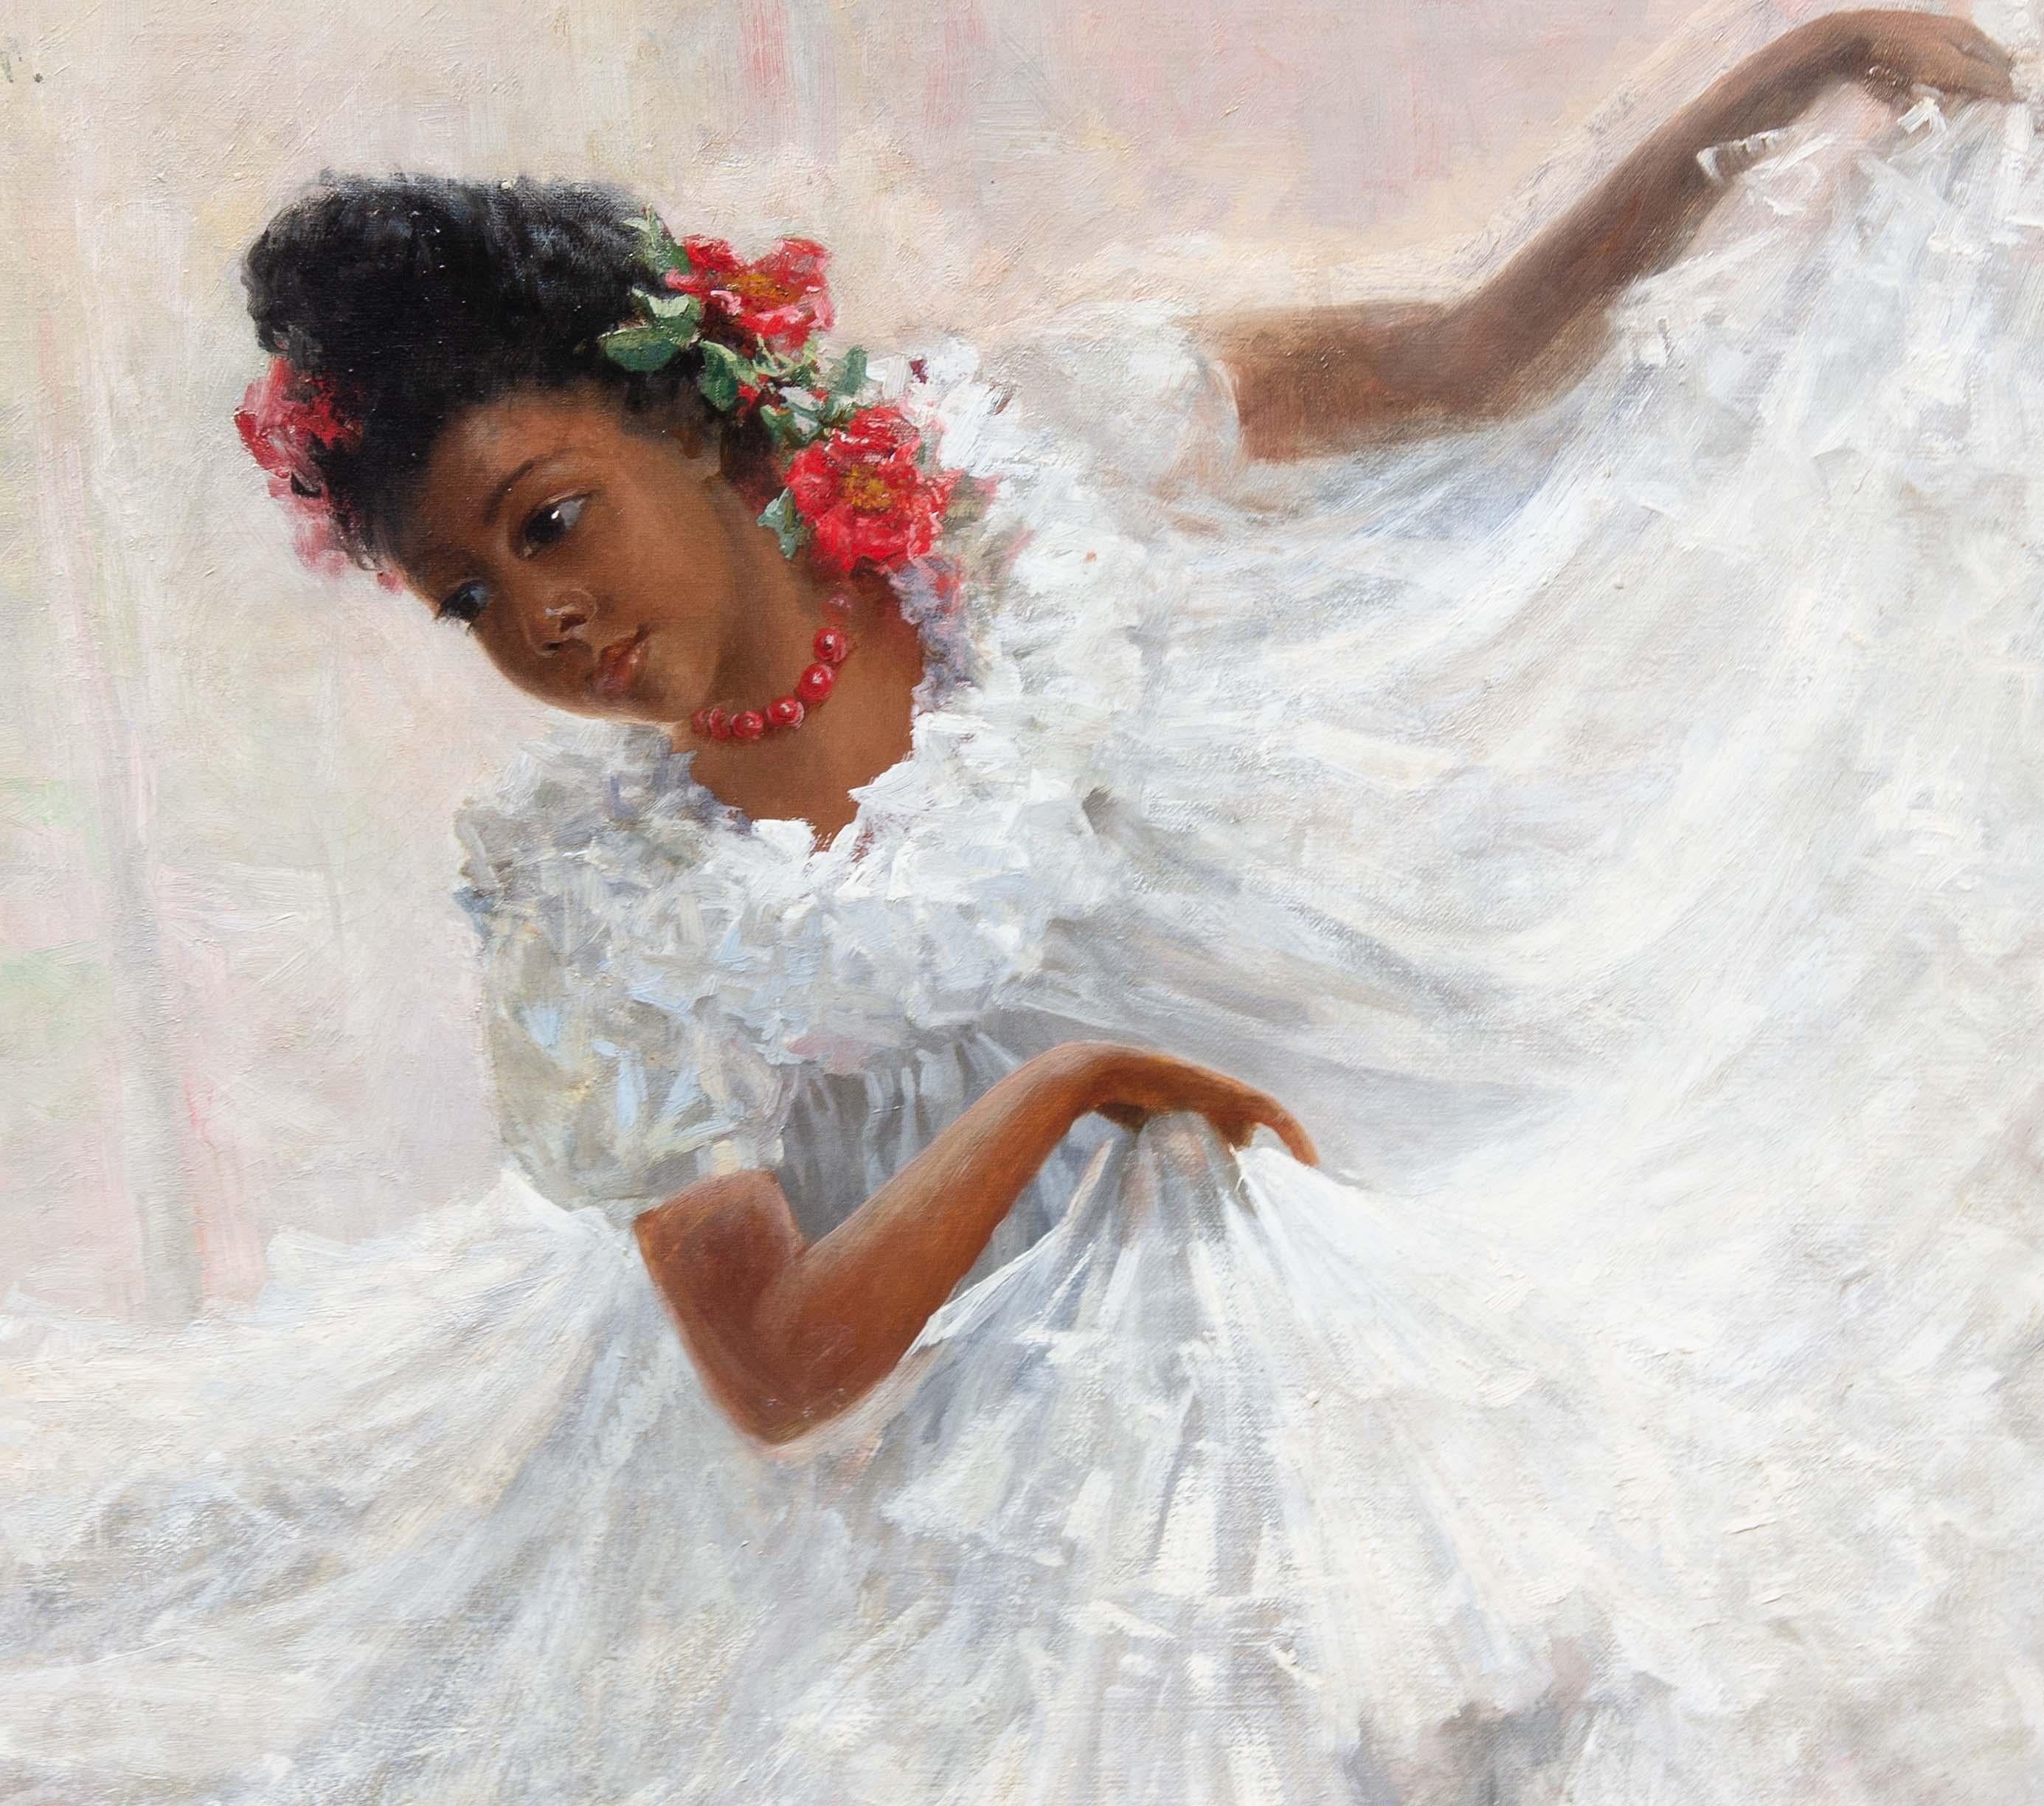 Impressionistisches Gemälde eines jungen spanischen Flamenco-Tänzers von J.C. Arter  – Painting von John Charles Arter